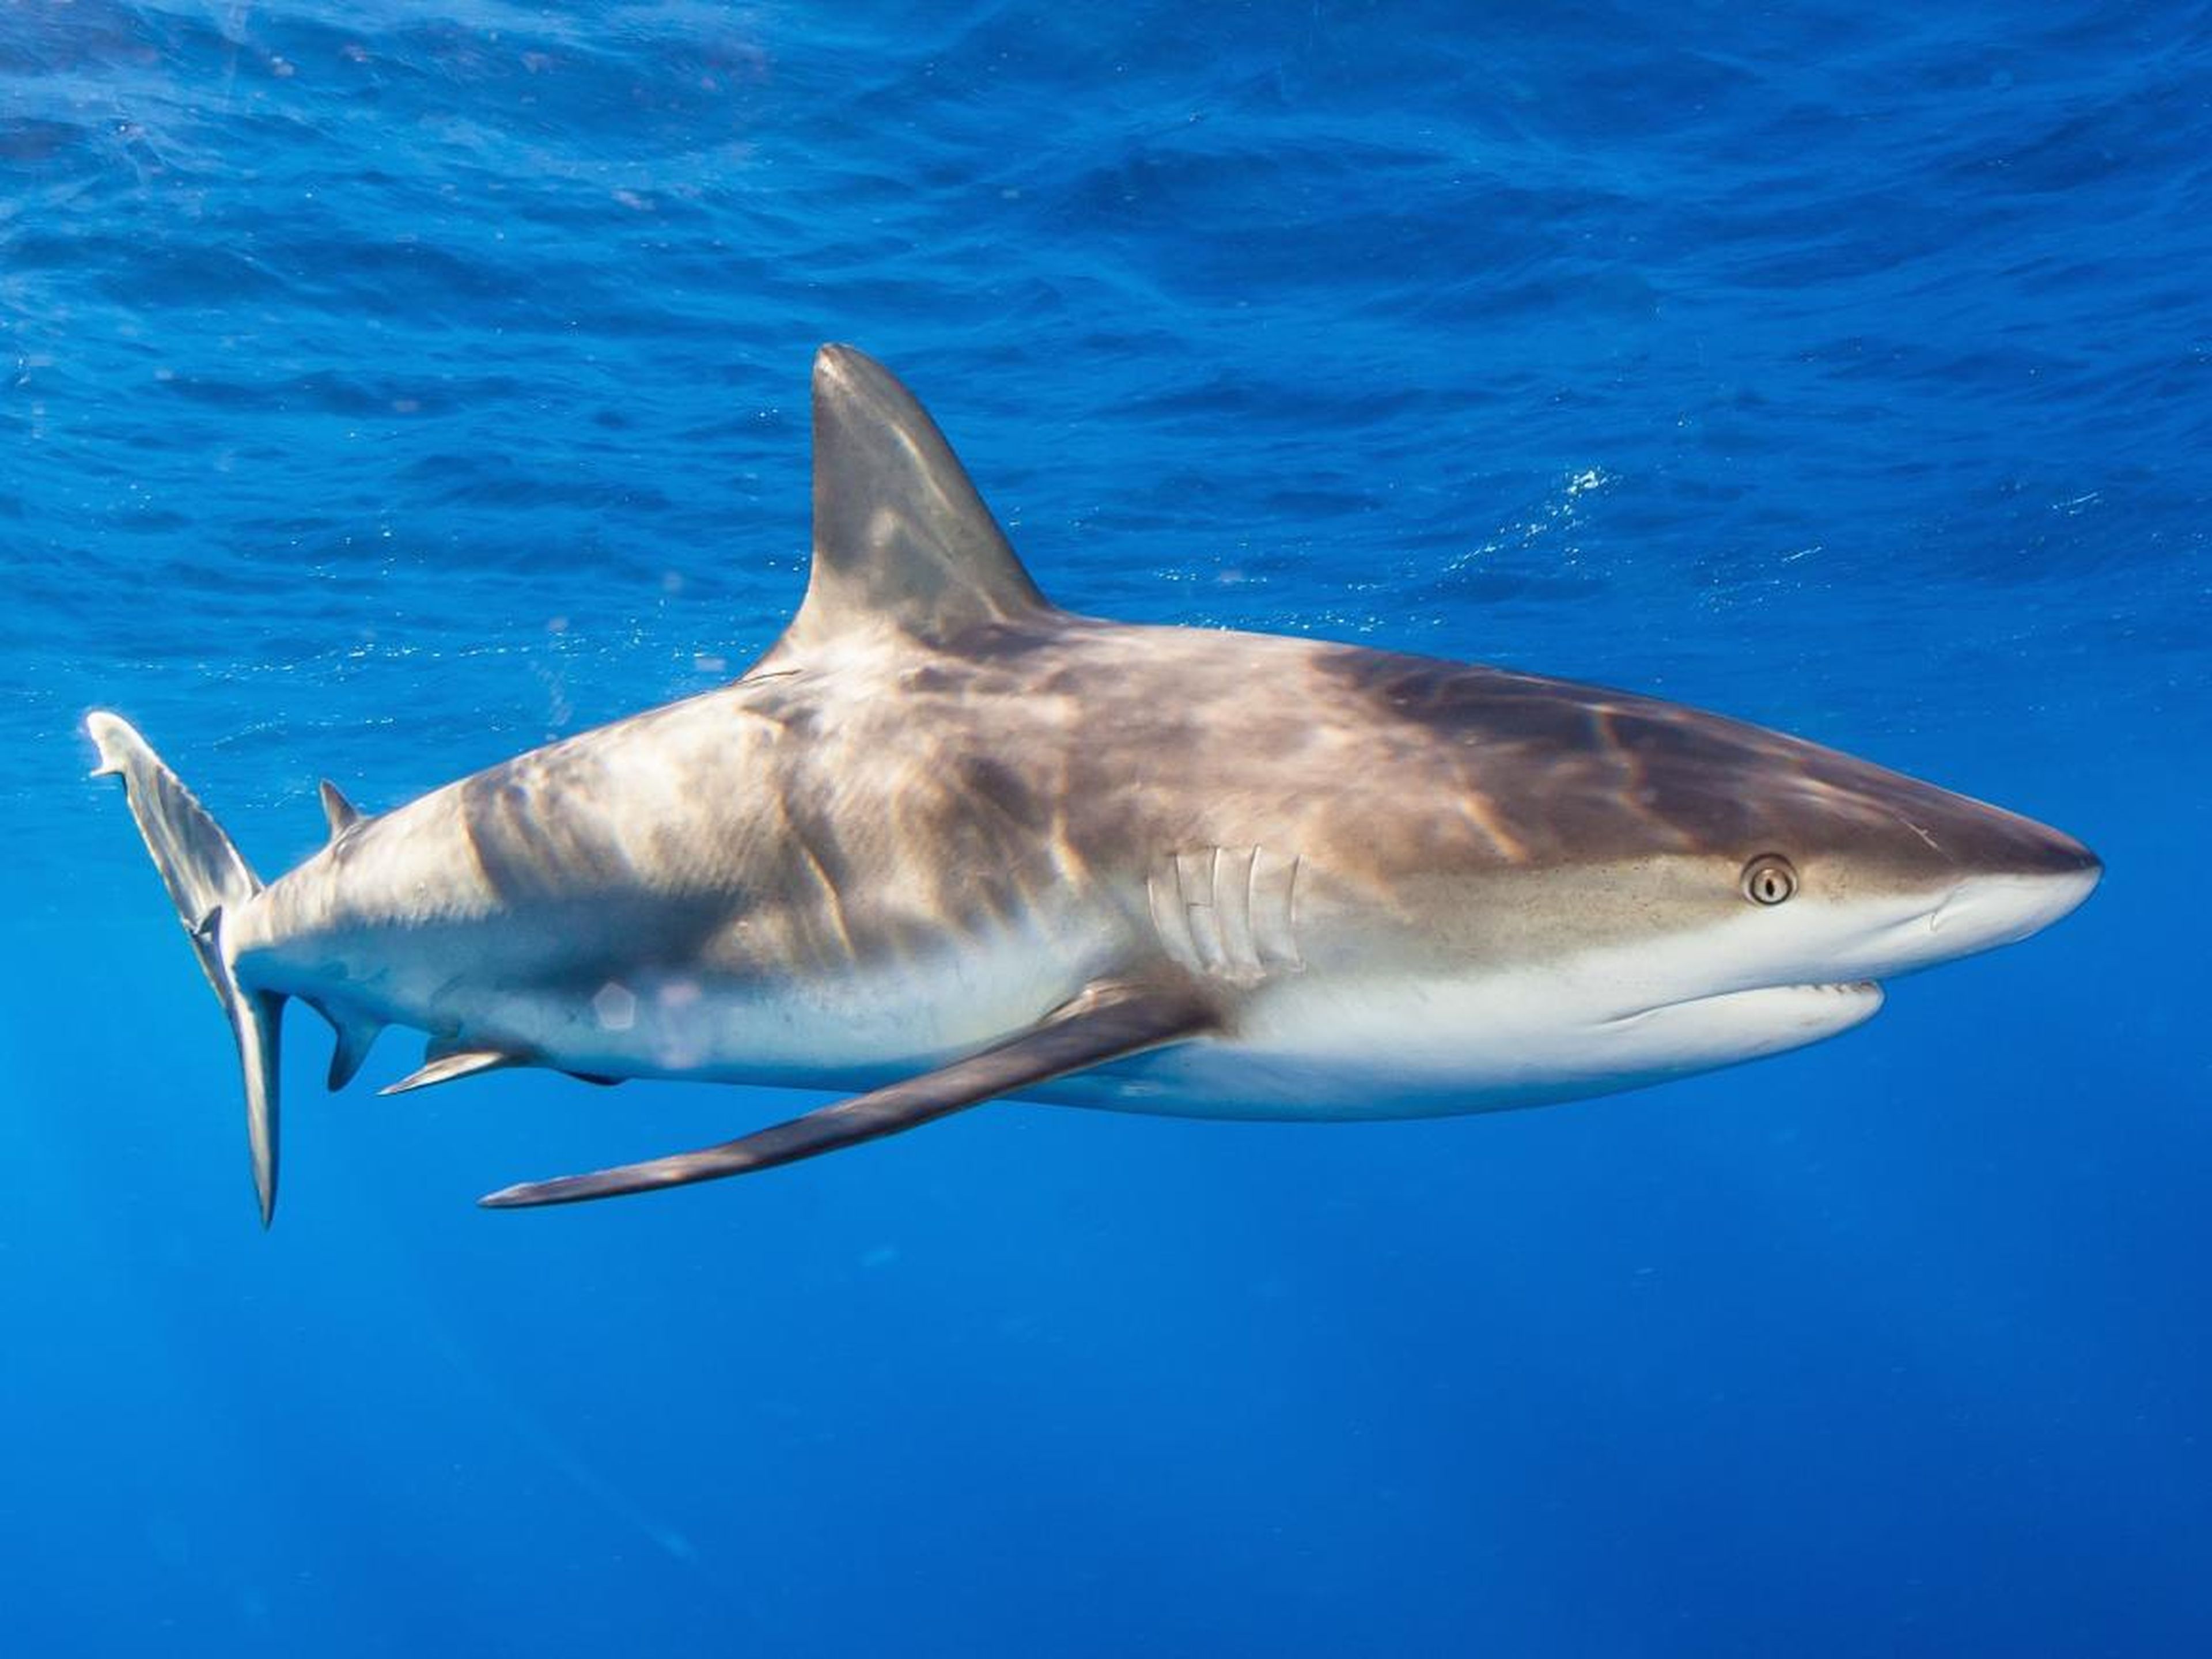 Alejandro Topete ganó una medalla de bronce en la categoría "Tiburones" del concurso UnderwaterPhotography.com por esta foto de un tiburón de arrecife nadando cerca de Cuba.